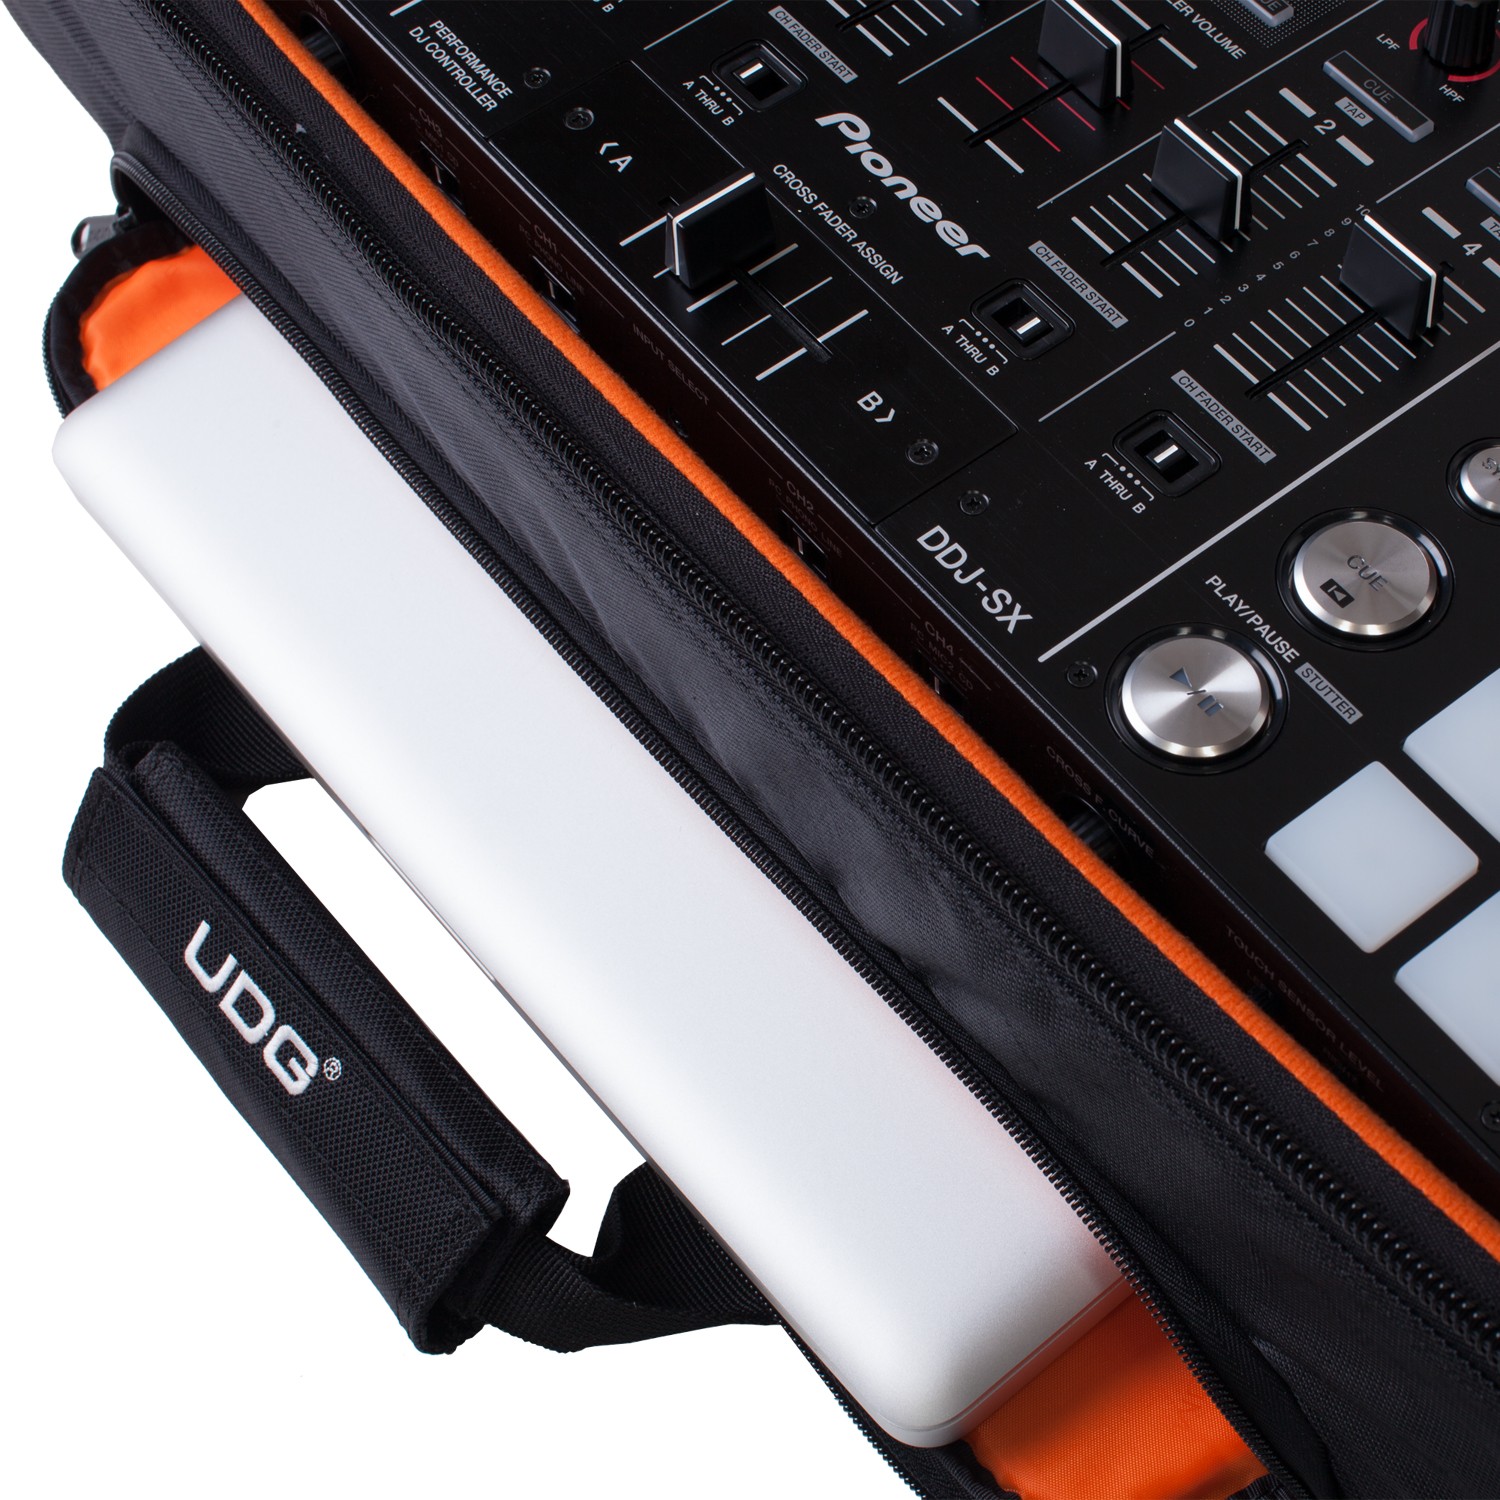 UDG Ultimate MIDI Controller Backpack Large Black/Orange Inside по цене 34 560 ₽